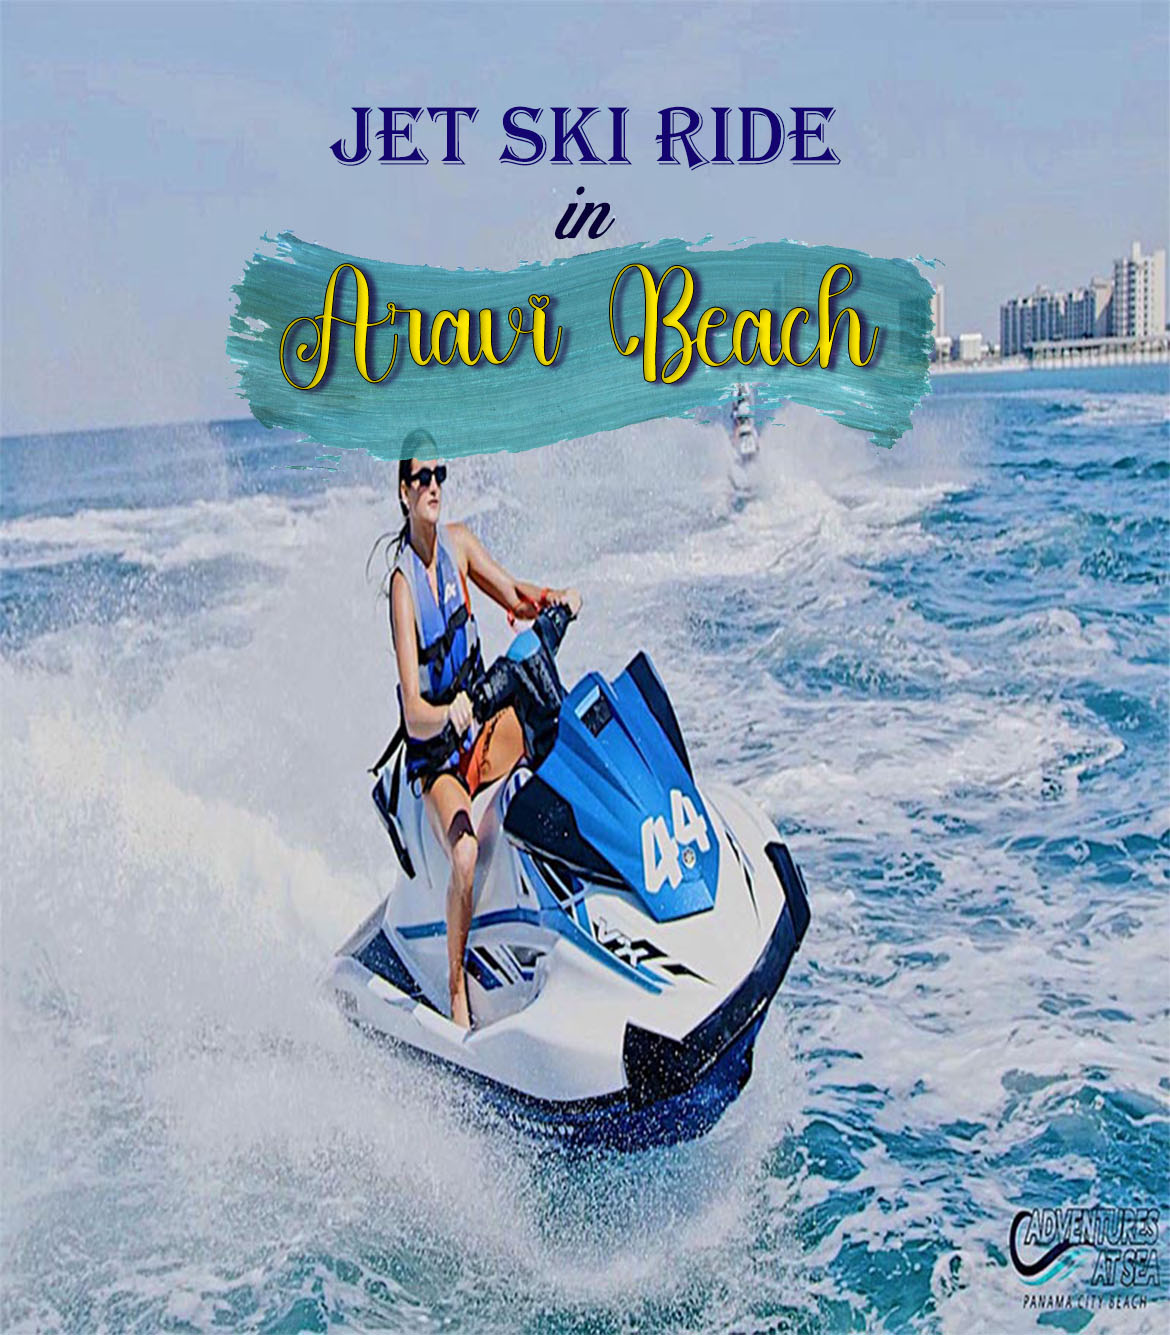 Jet Ski Ride in Aravi Beach